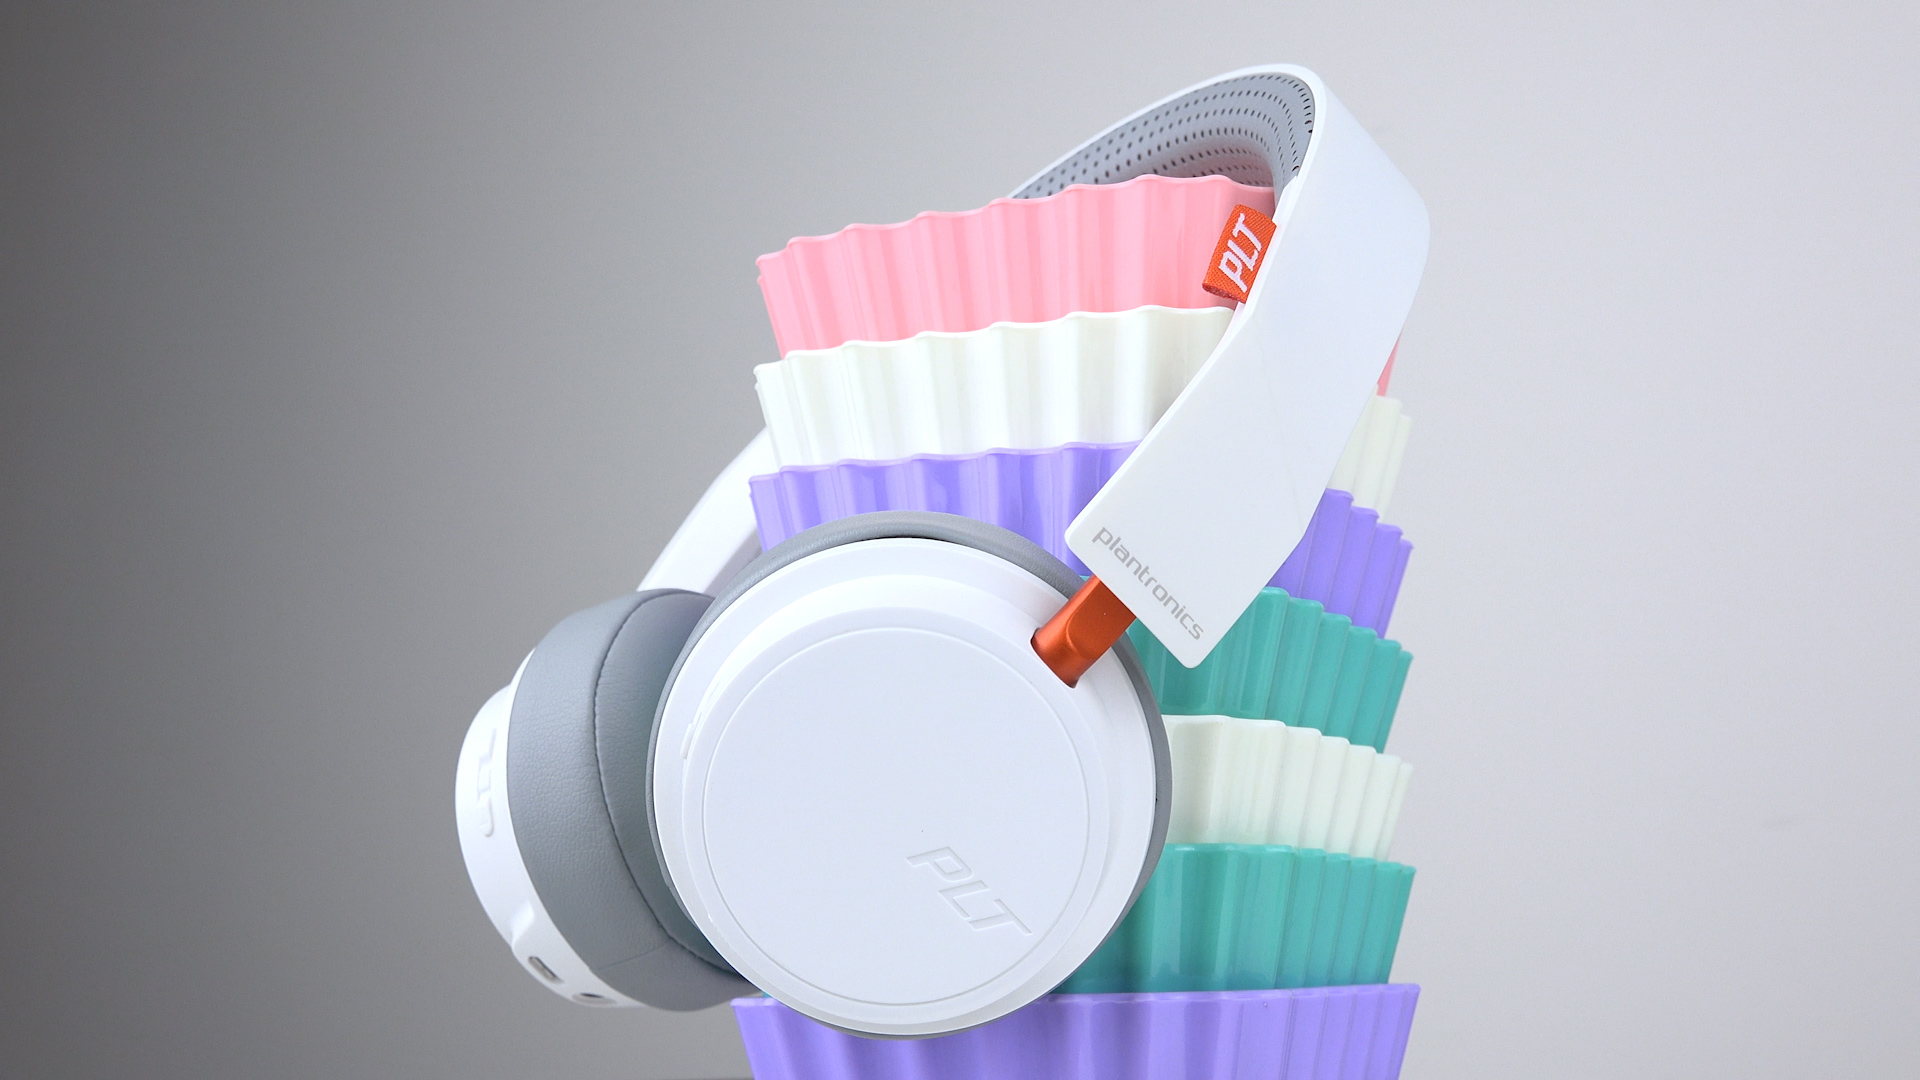 Plantronics BackBeat 500 incelemesi 'Tasarımı hoş, hafif ve güçlü kulaküstü kulaklık'